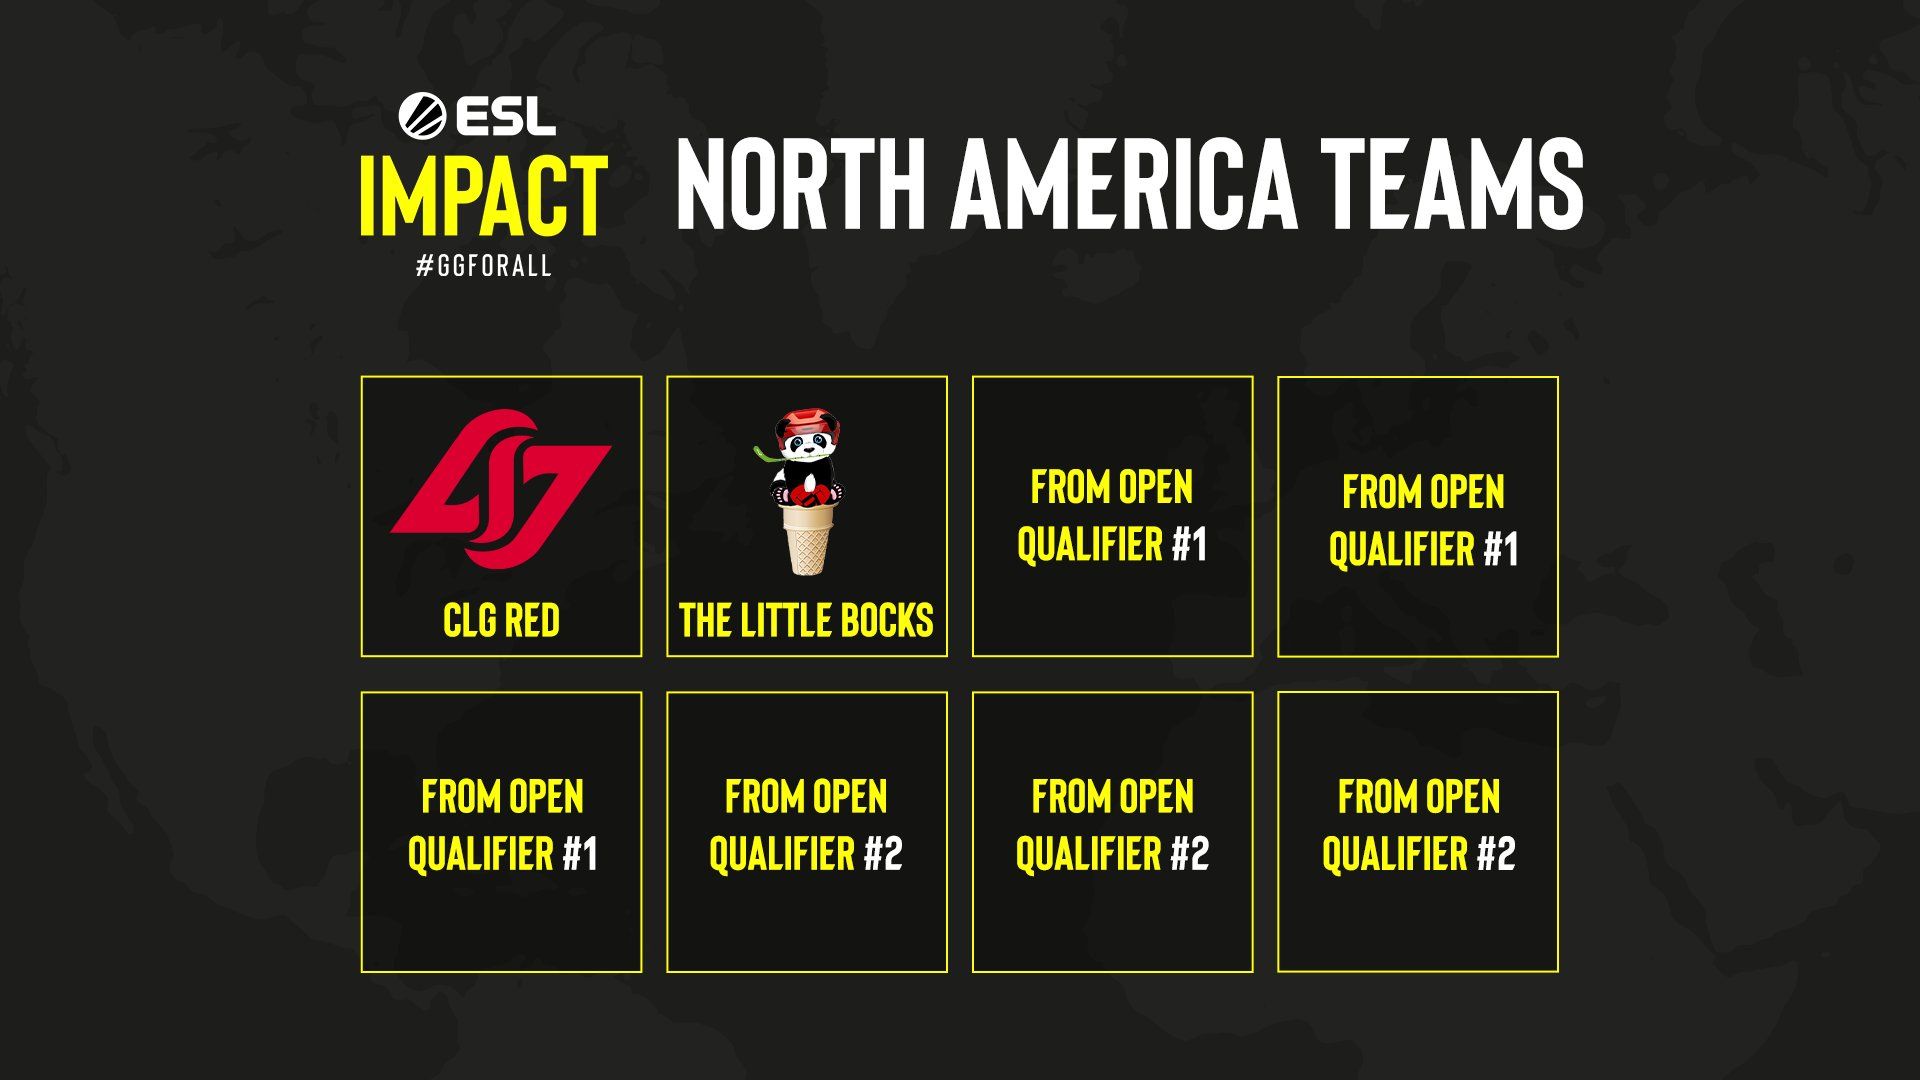 Участники ESL Impact League для Северной Америки.
Источник: ESL